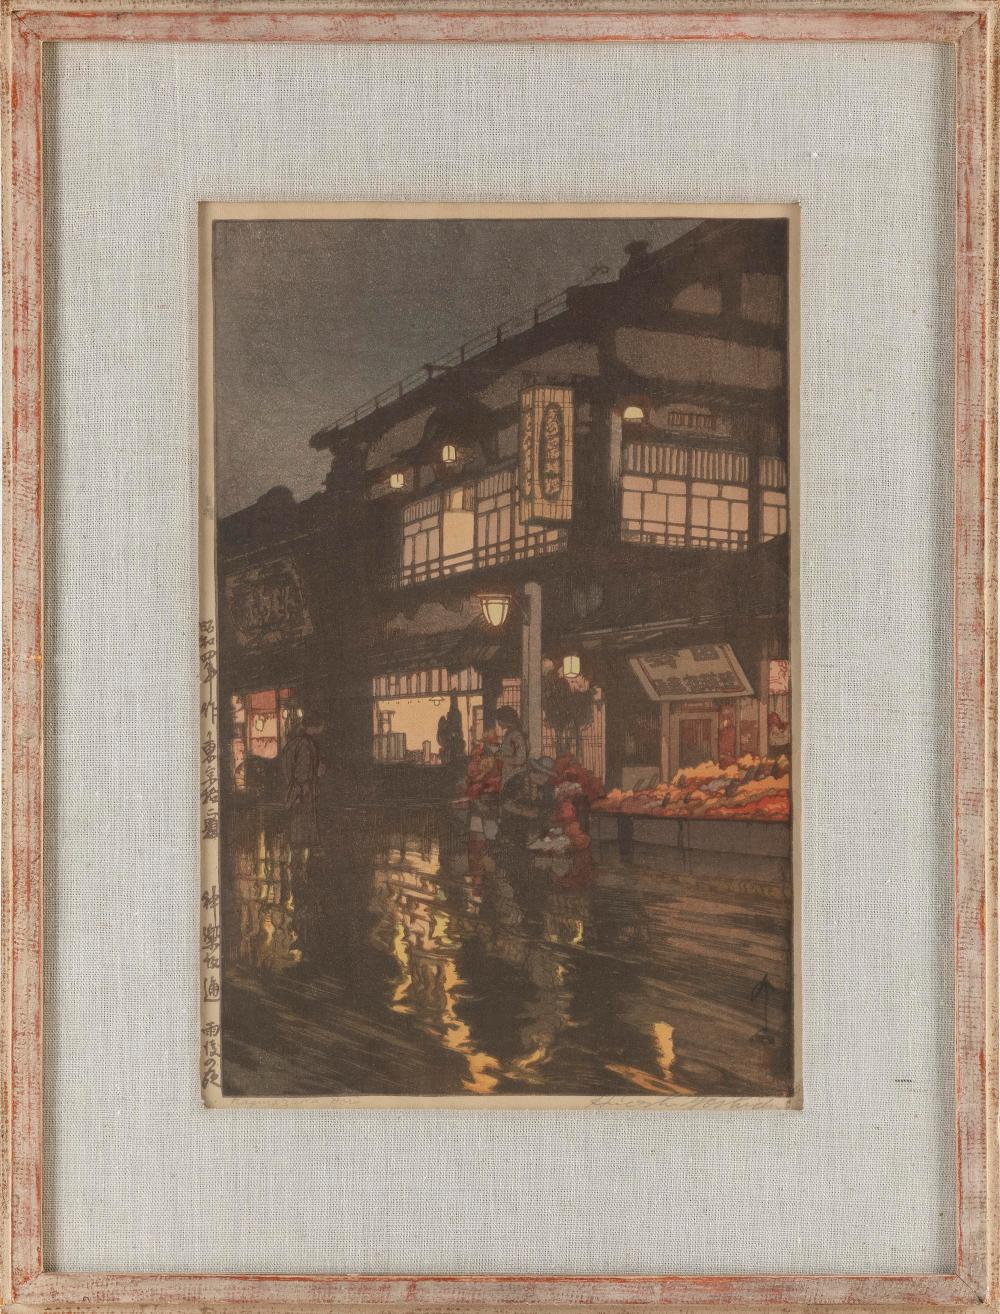 HIROSHI YOSHIDA JAPAN 1876 1950  3c7dff